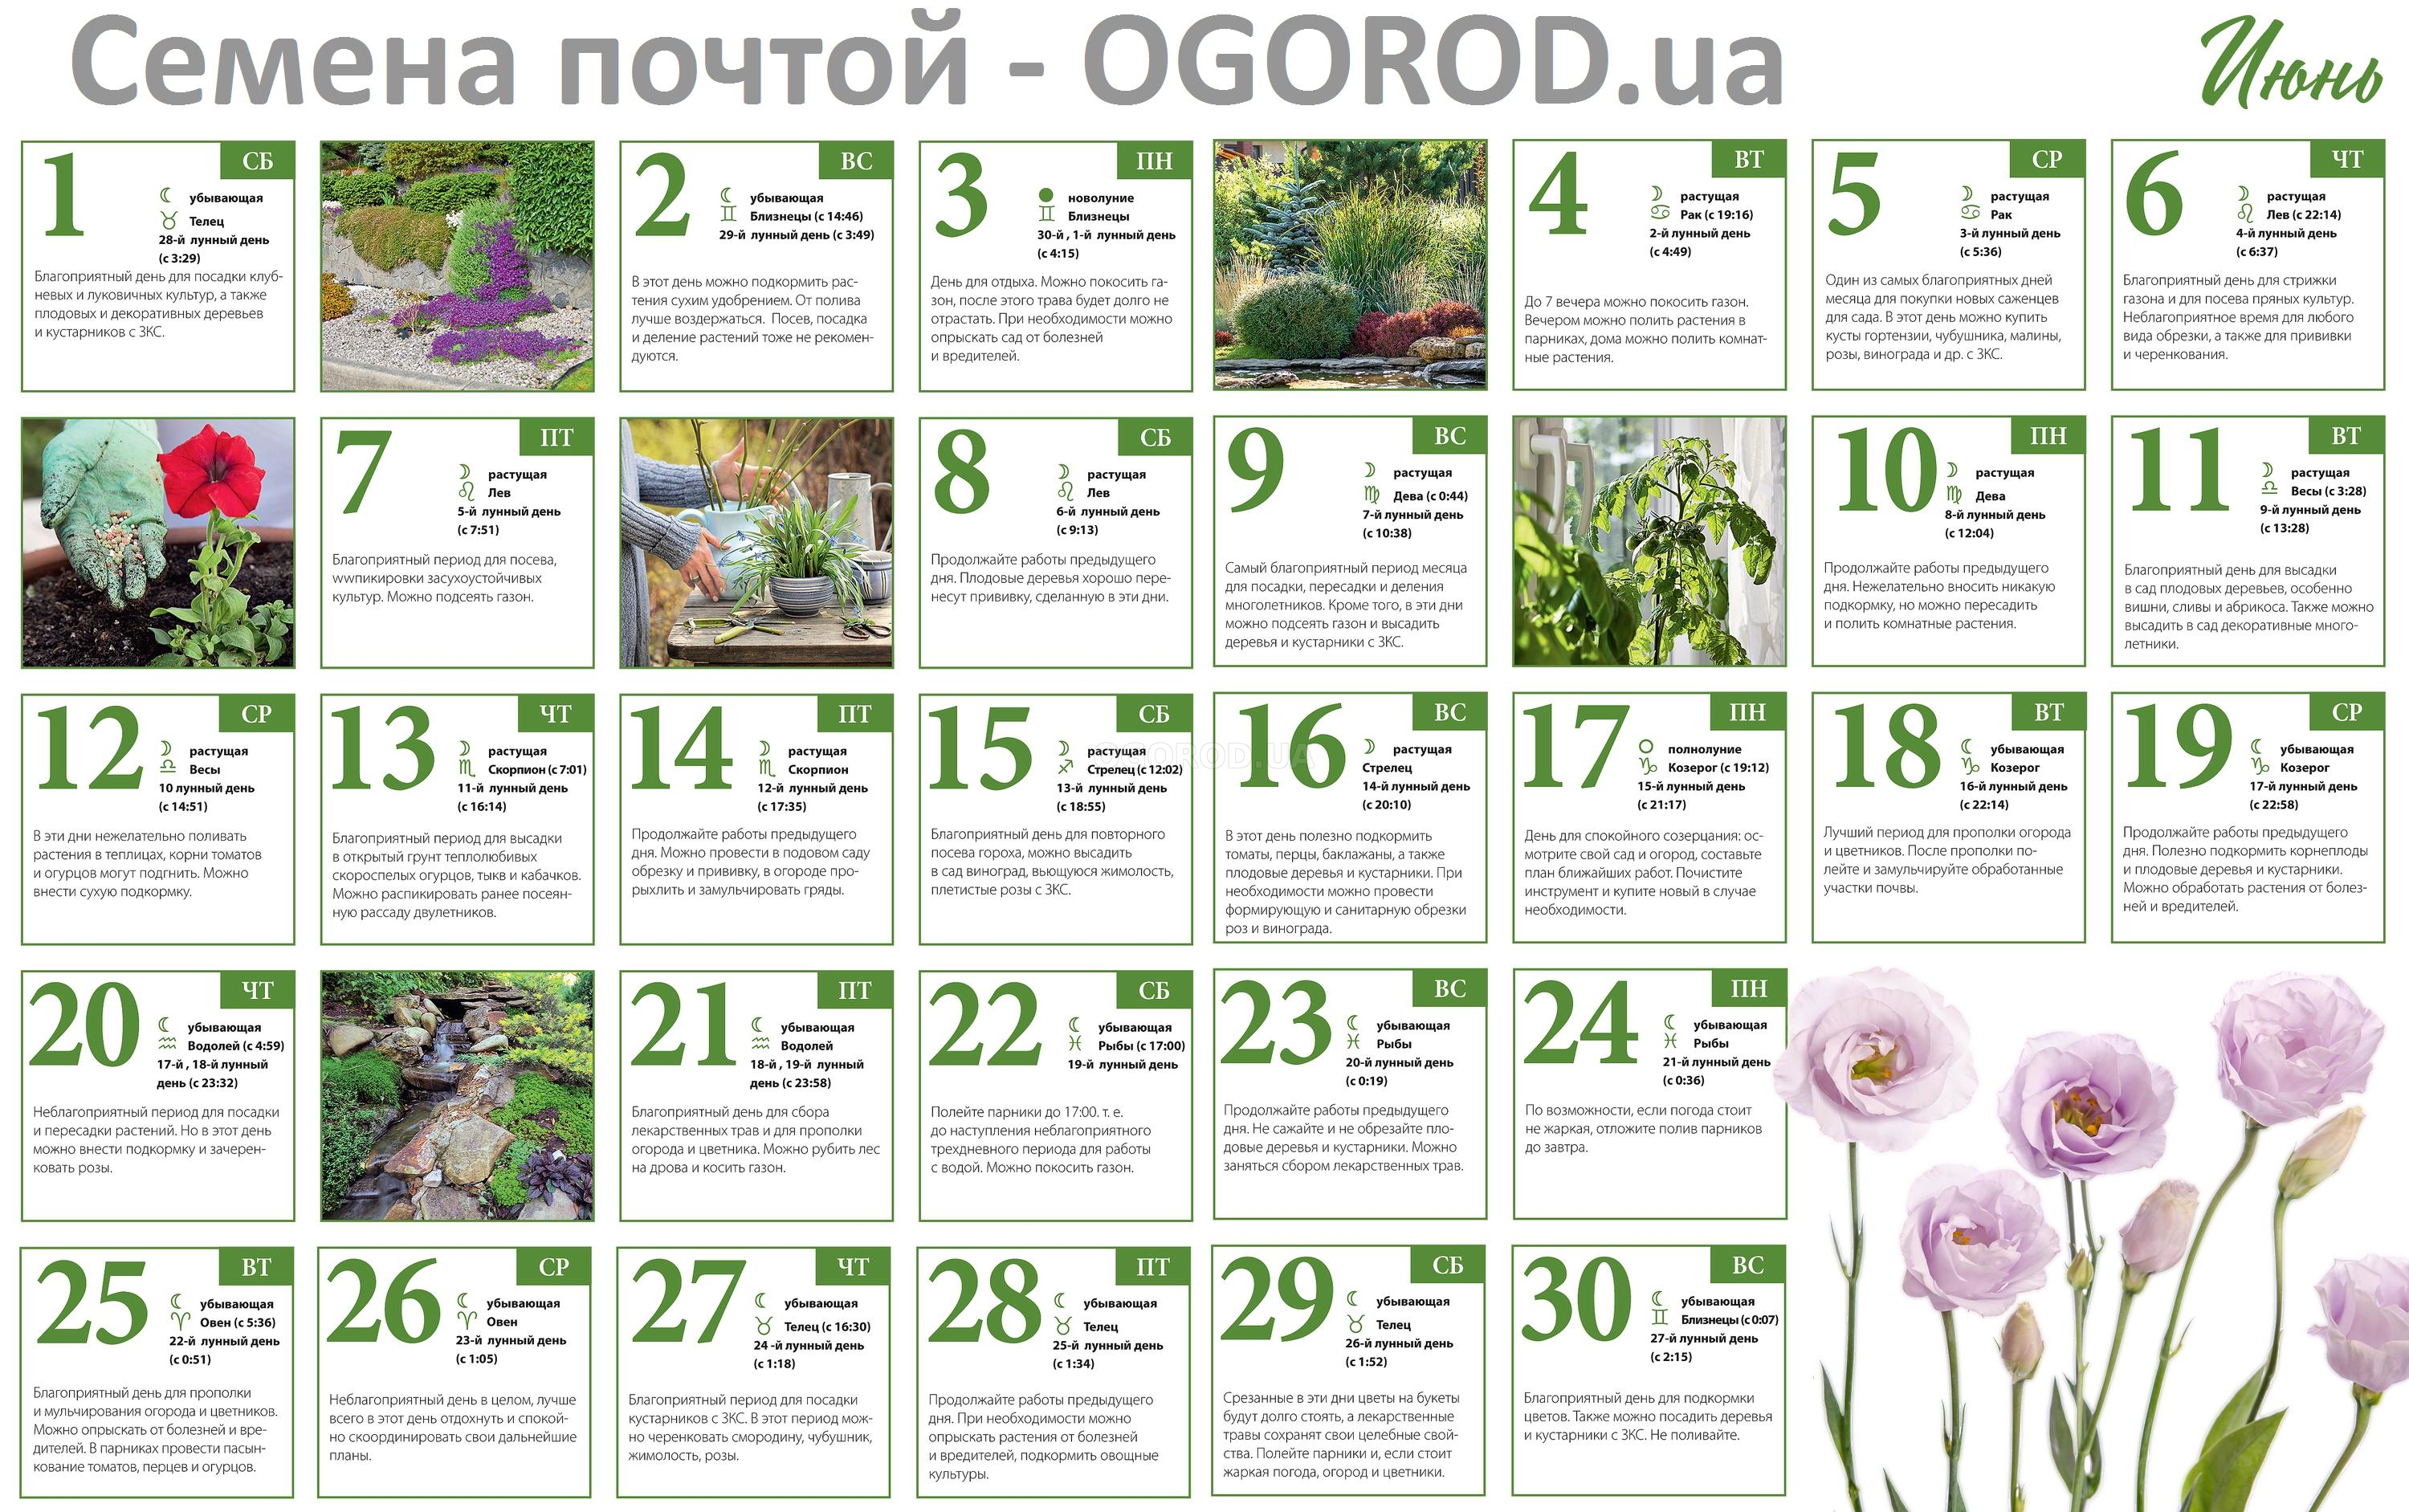 Огородный календарь на июнь 2019